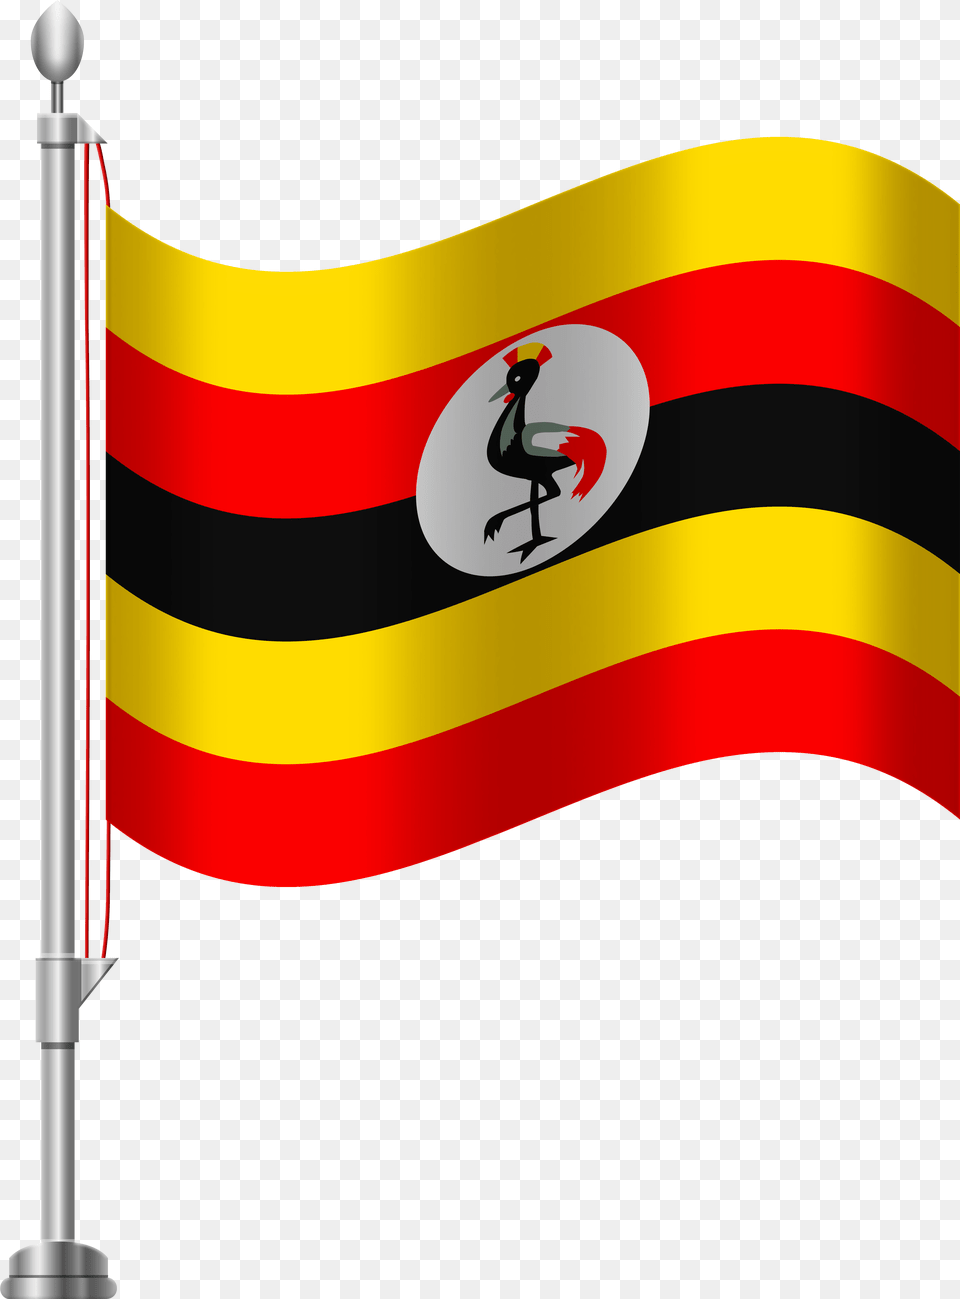 Uganda Flag Clip Art, Dynamite, Weapon Png Image